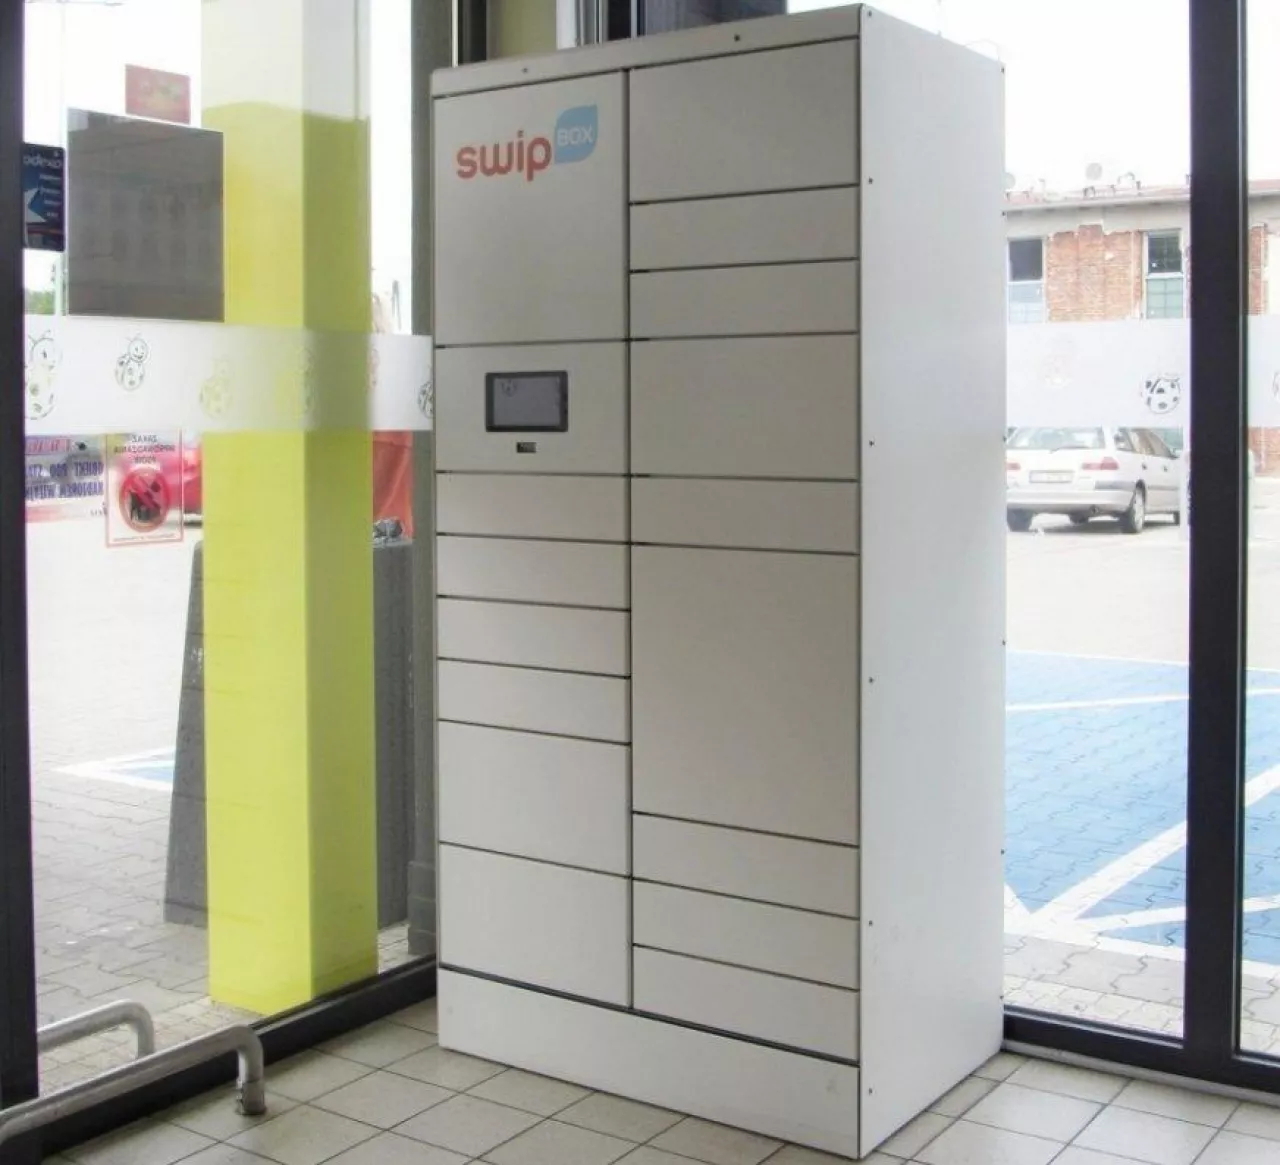 Automat SwipBox (fot. Konrad Kaszuba)